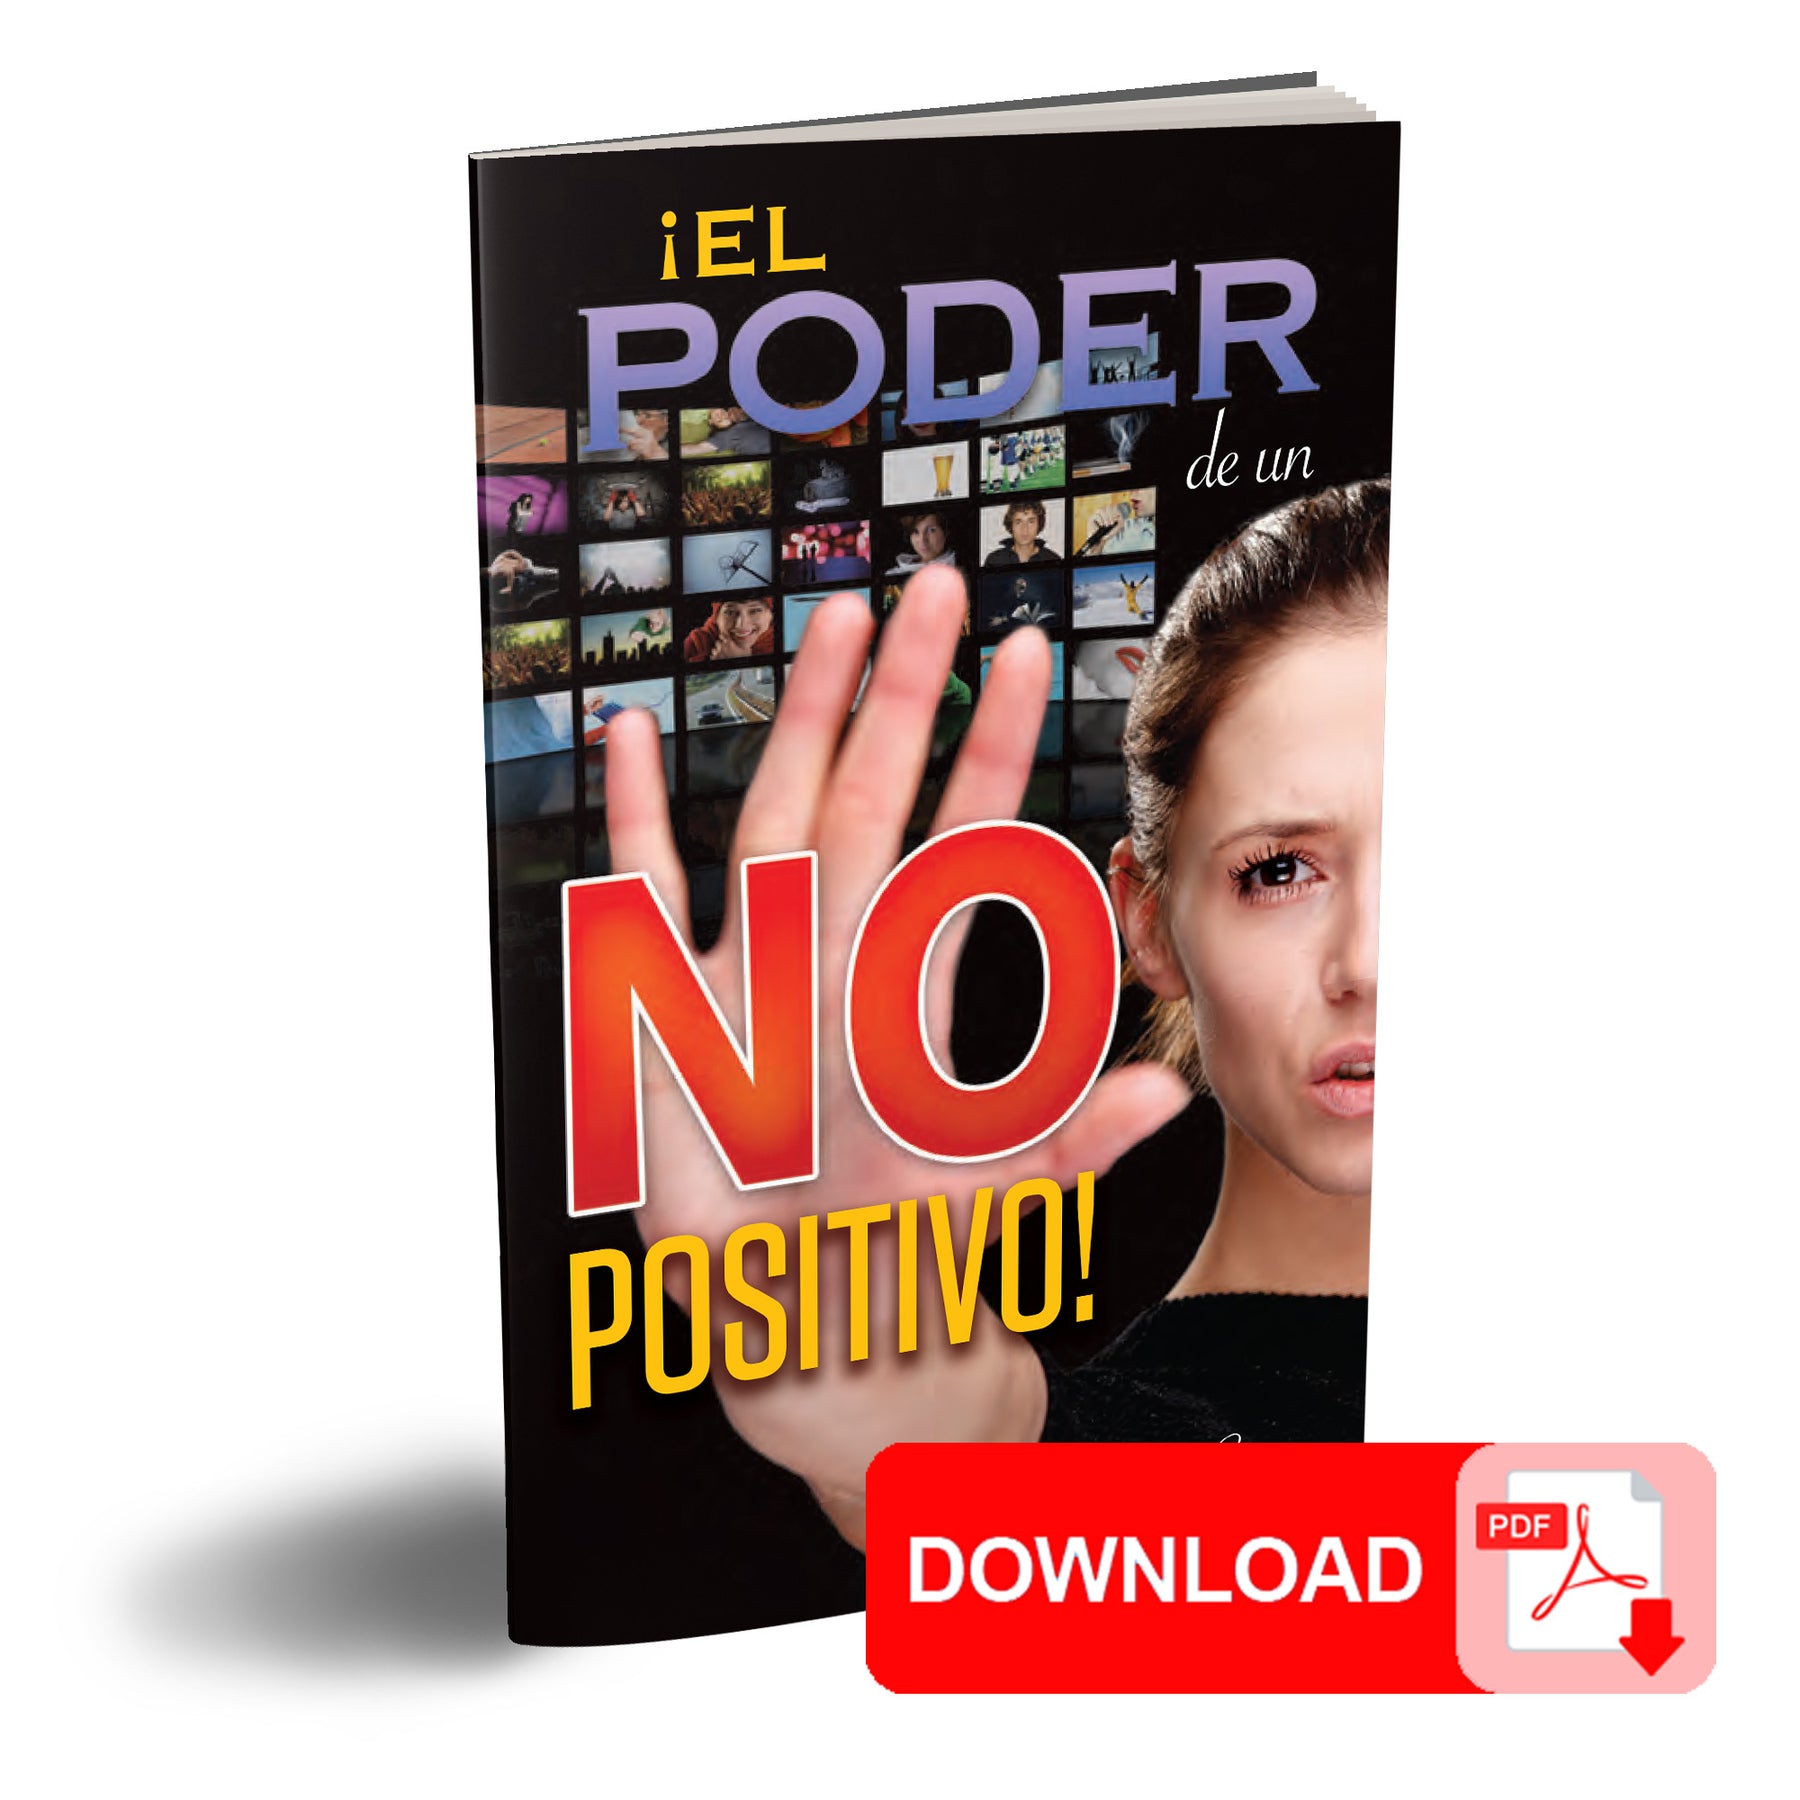 (PDF Download) El Poder de un NO Positivo! por Joe Crews (The Power of a Positive NO!)